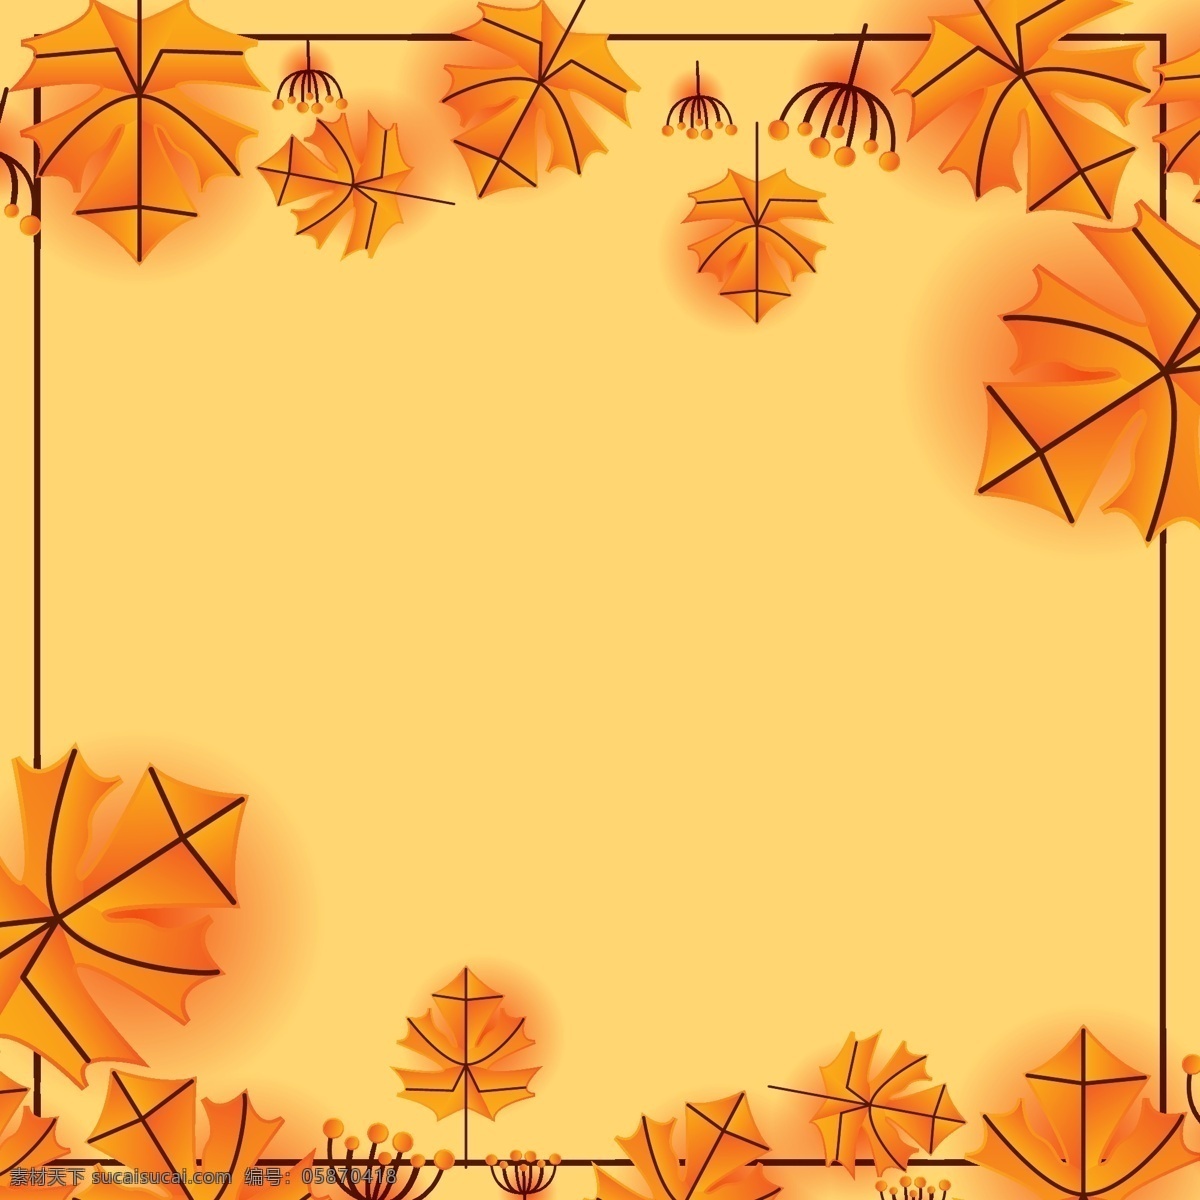 秋天枫叶背景 枫叶 秋天 秋季 叶 背景 抽象 剪纸 秋天背景